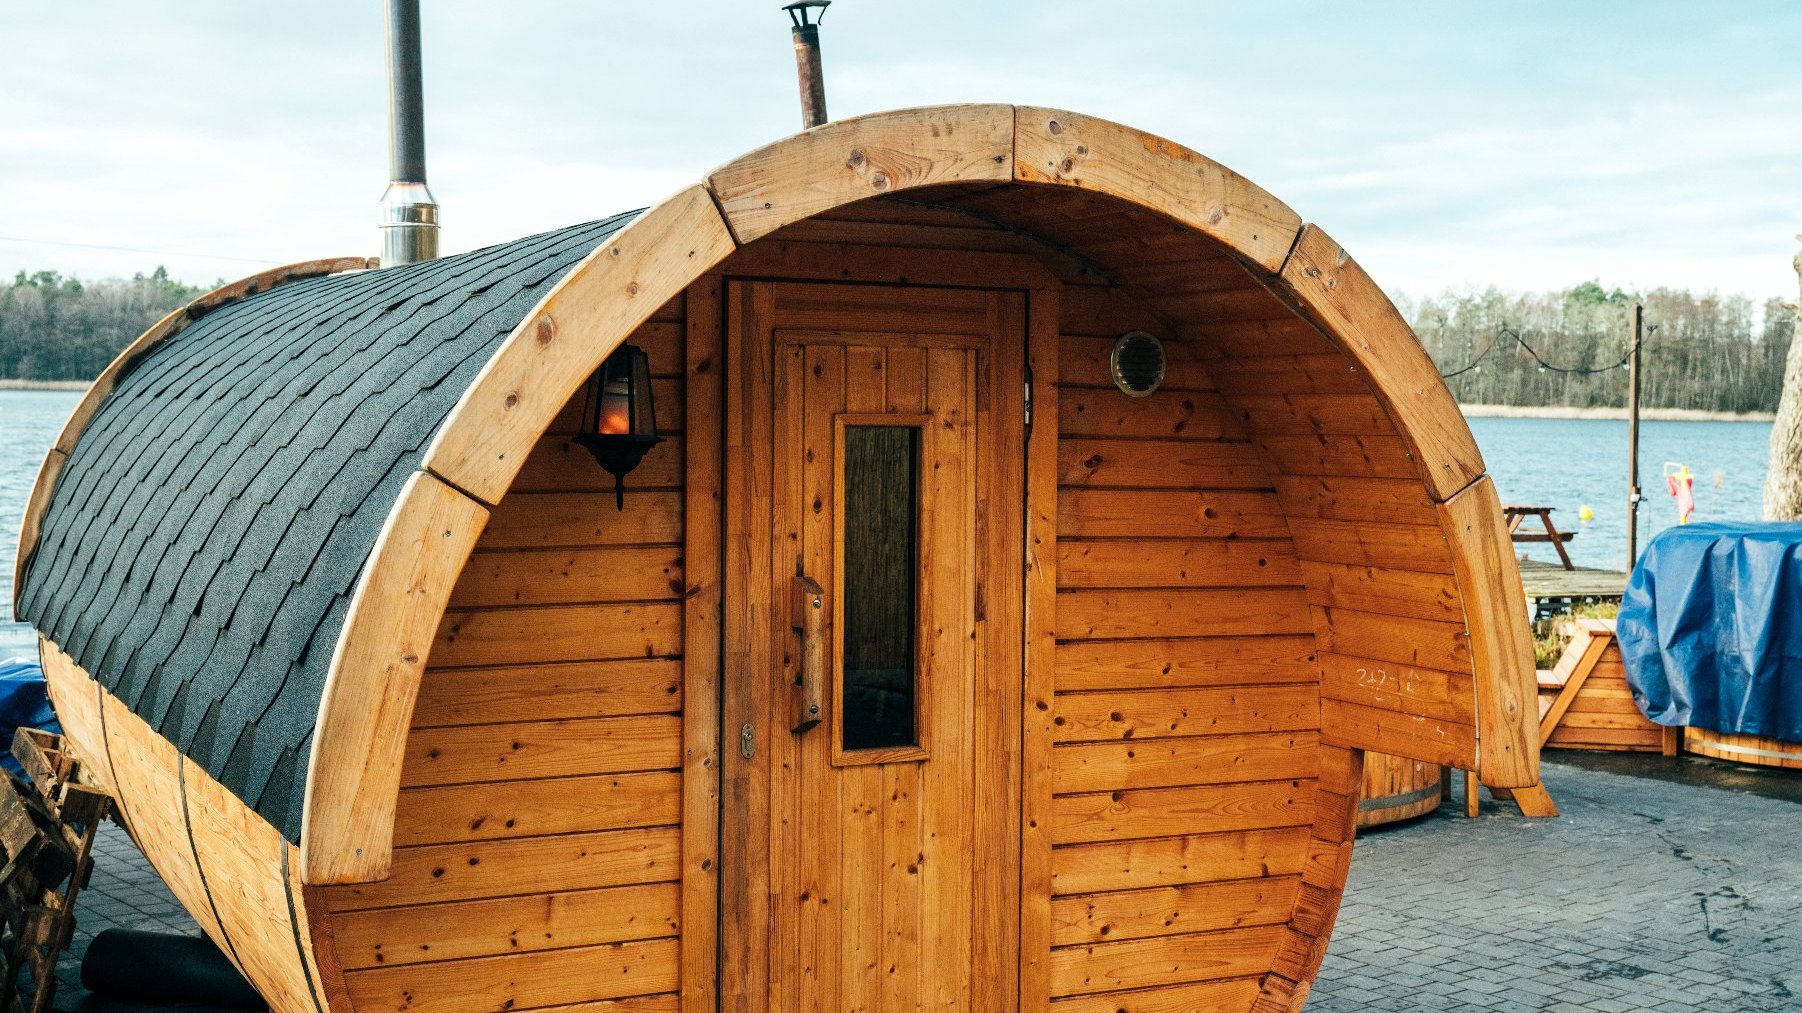 Na zdjęciu widać półokrągły, zbudowany z desek obiekt, w którym znajduje się sauna.